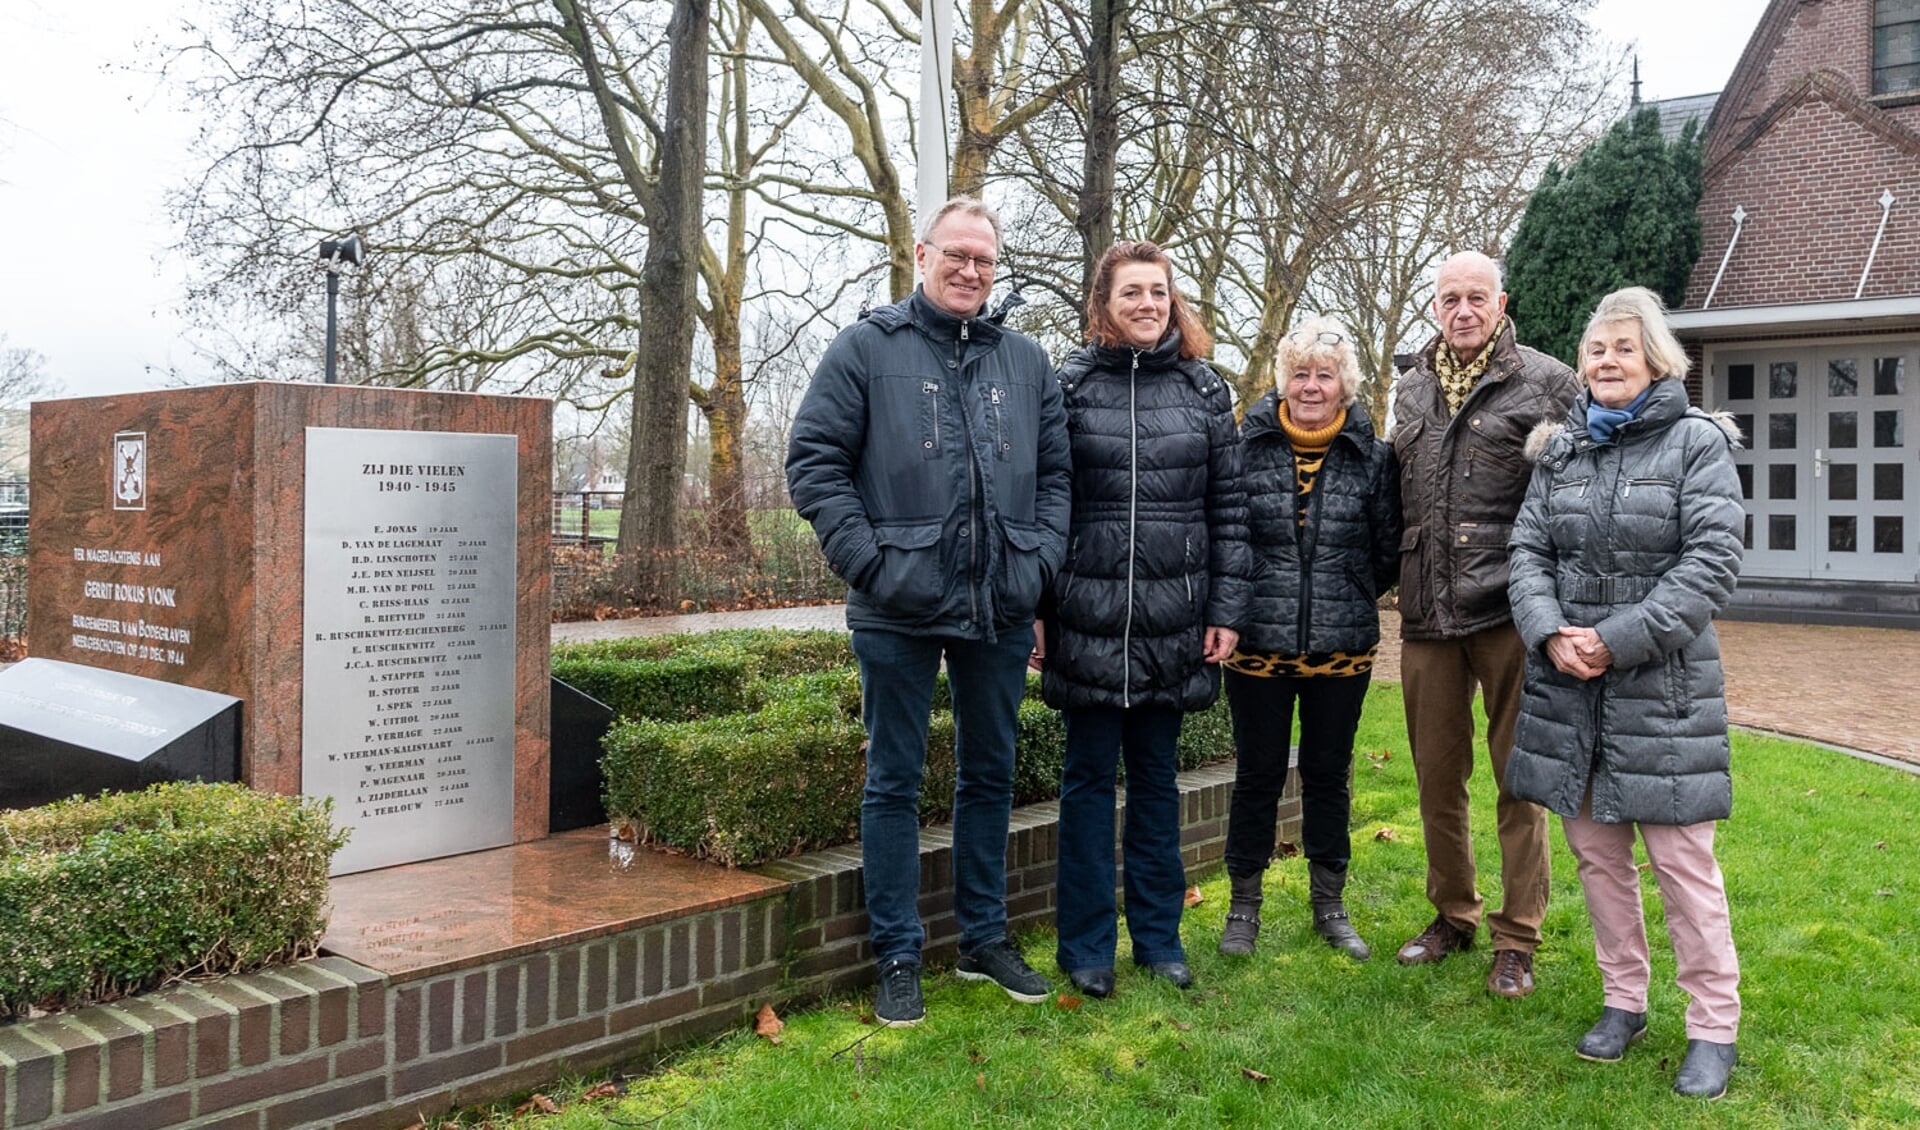 De nazaten van Aris Terlouw, bij het monument op de begraafplaats Vredehof te Bodegraven, met v.l.n.r. Bert Terlouw, Marianne Doornekamp-Terlouw, Rinie Terlouw-Deen, Ben Terlouw en Elly Terlouw-Hordijk